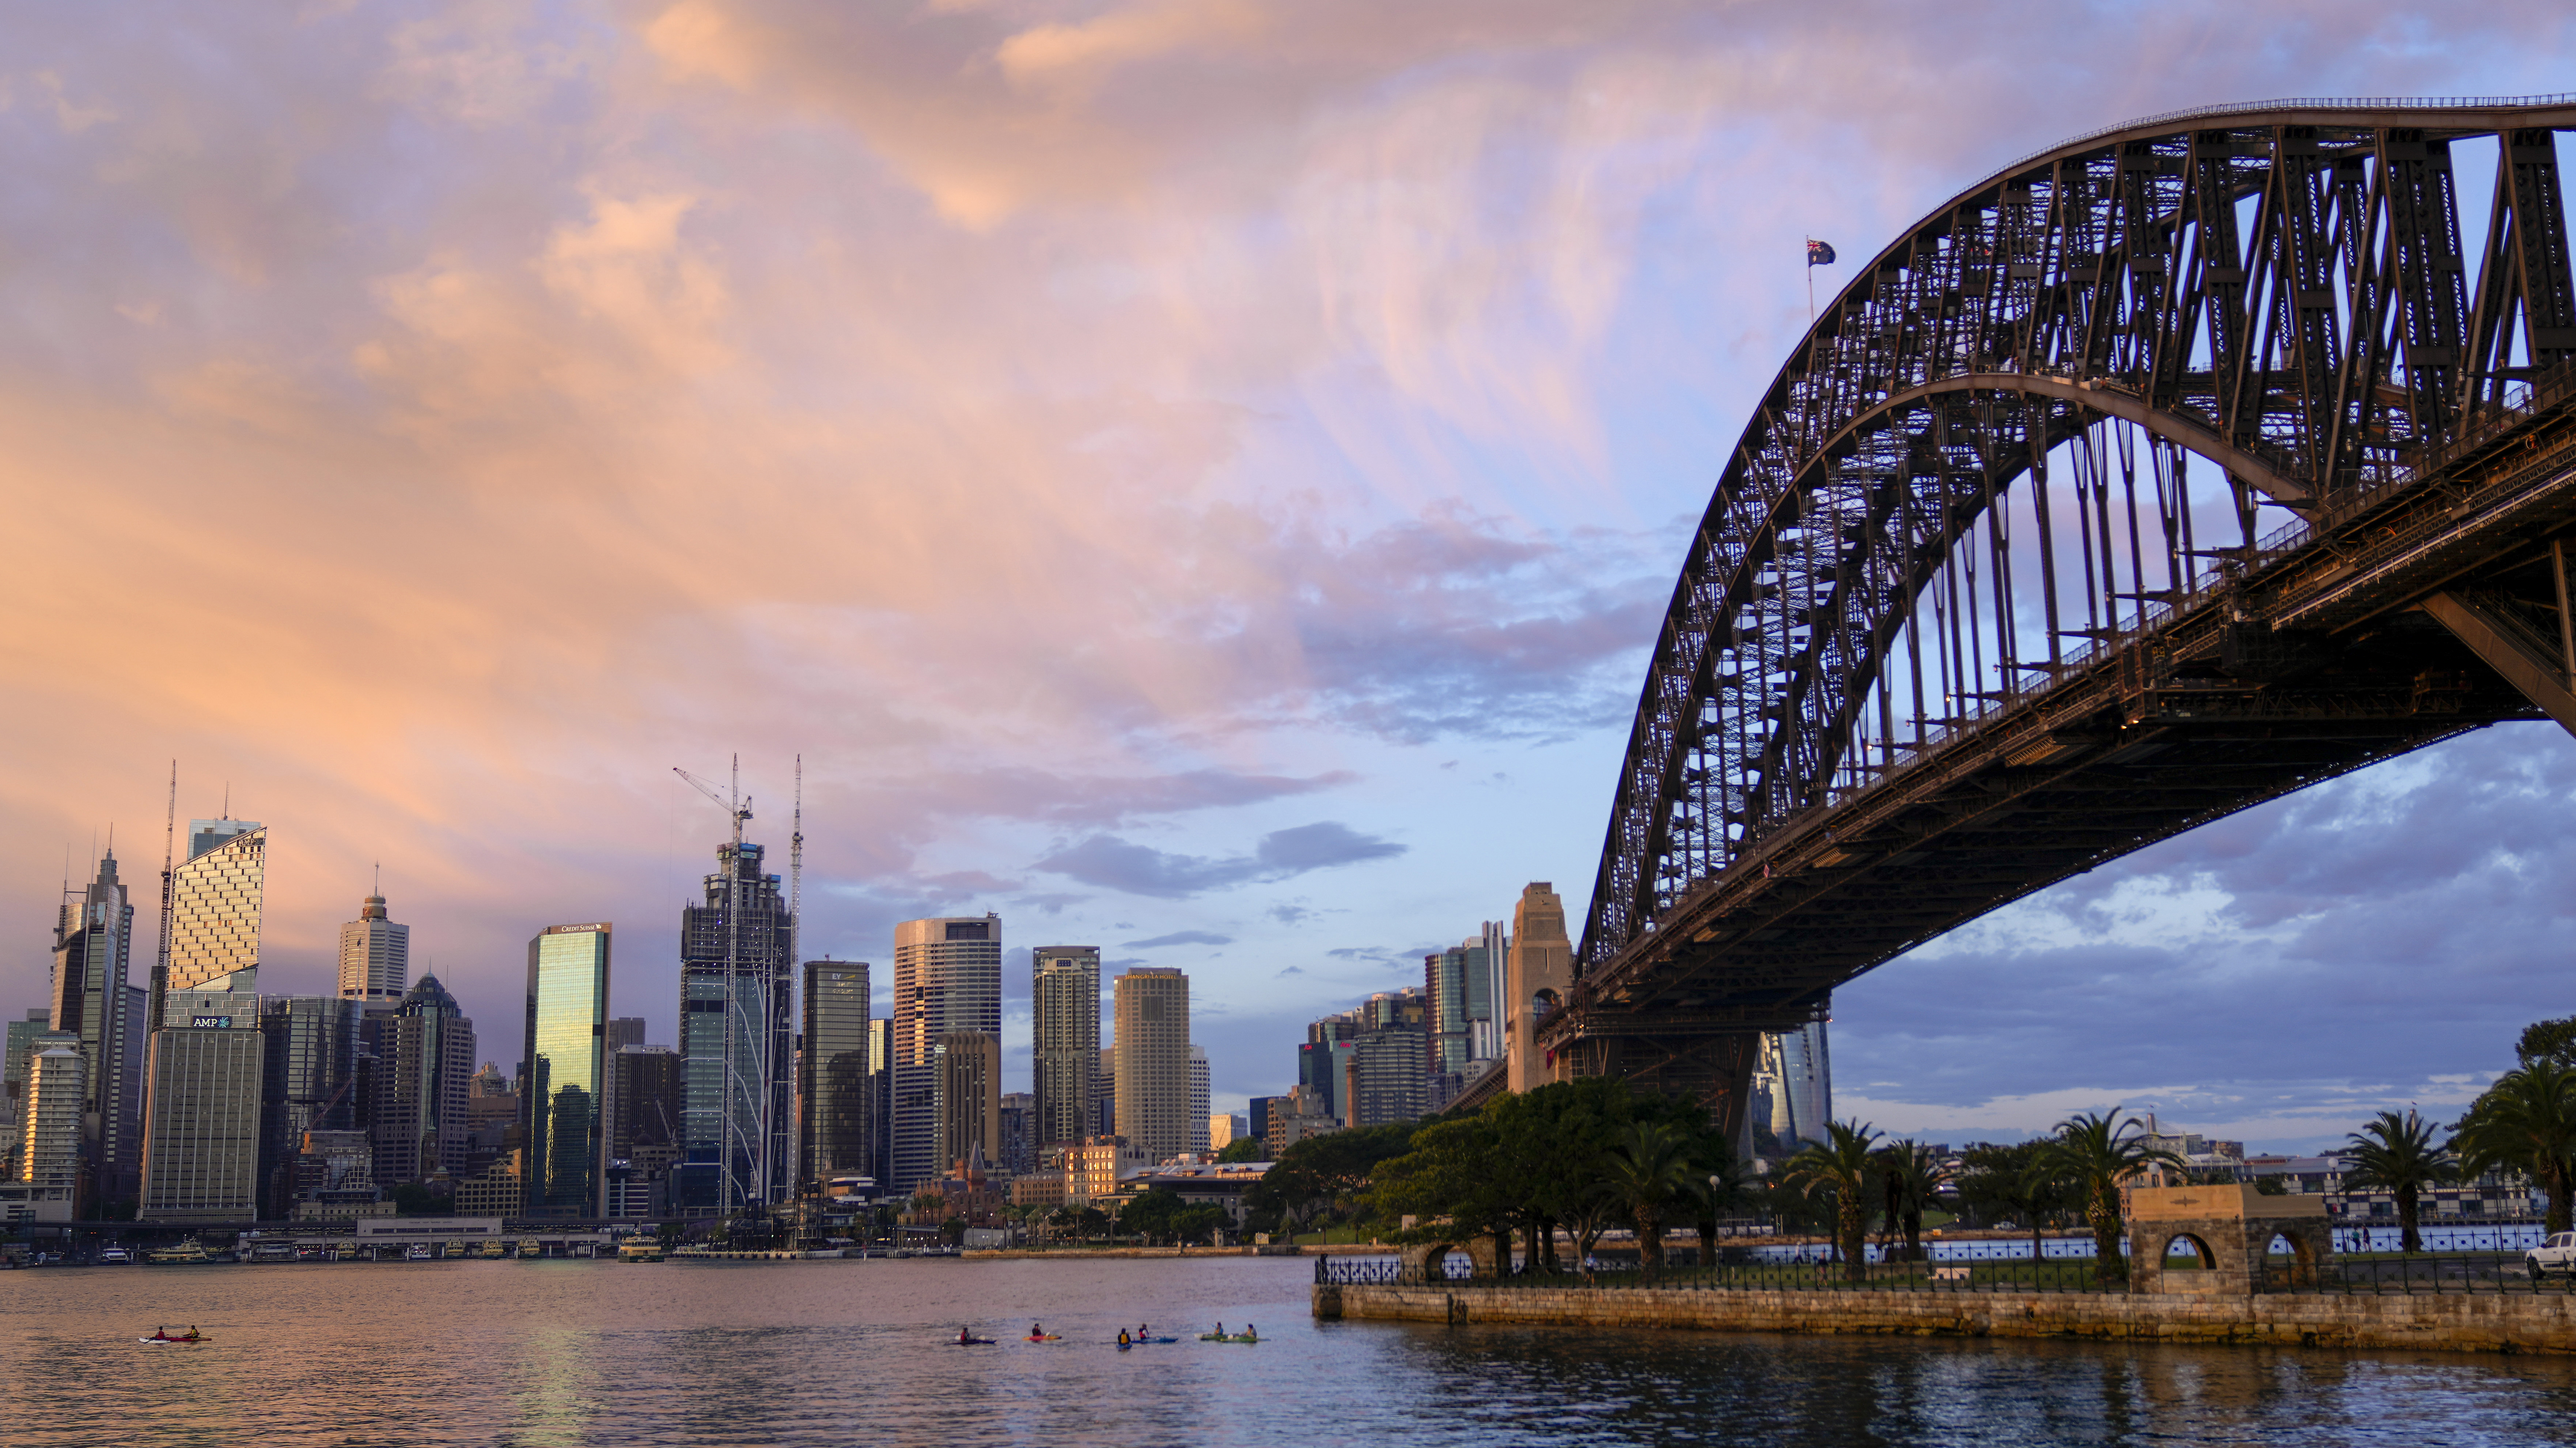 The sun rises over the Sydney skyline.